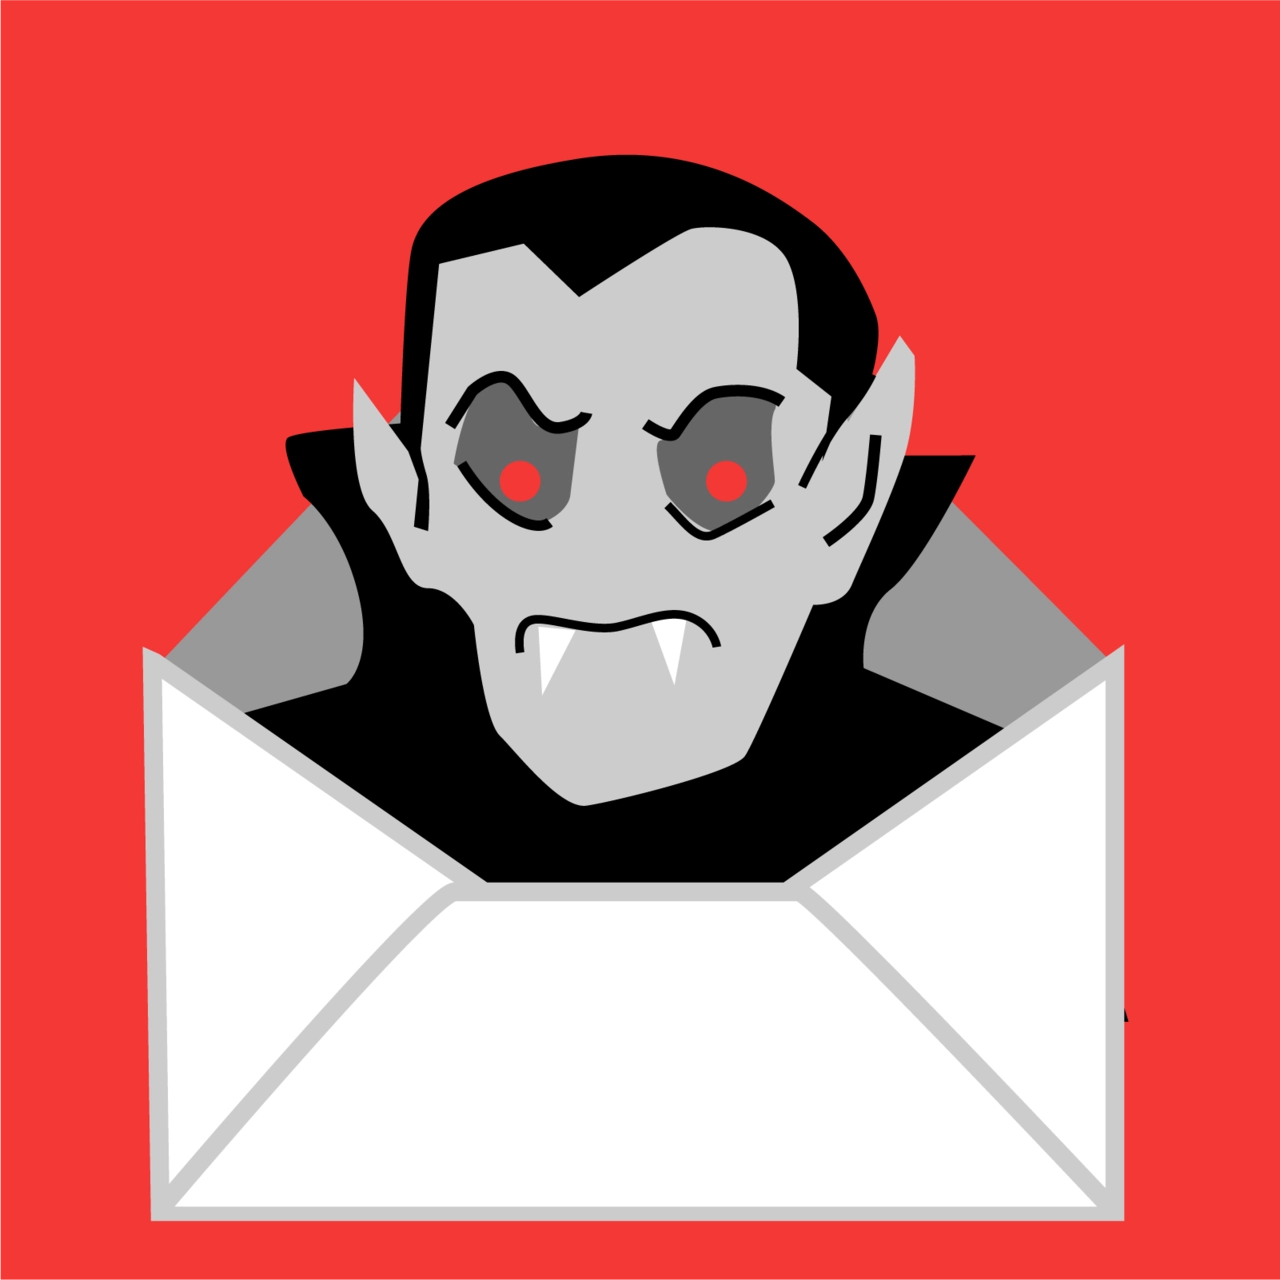 Dracula Daily's icon